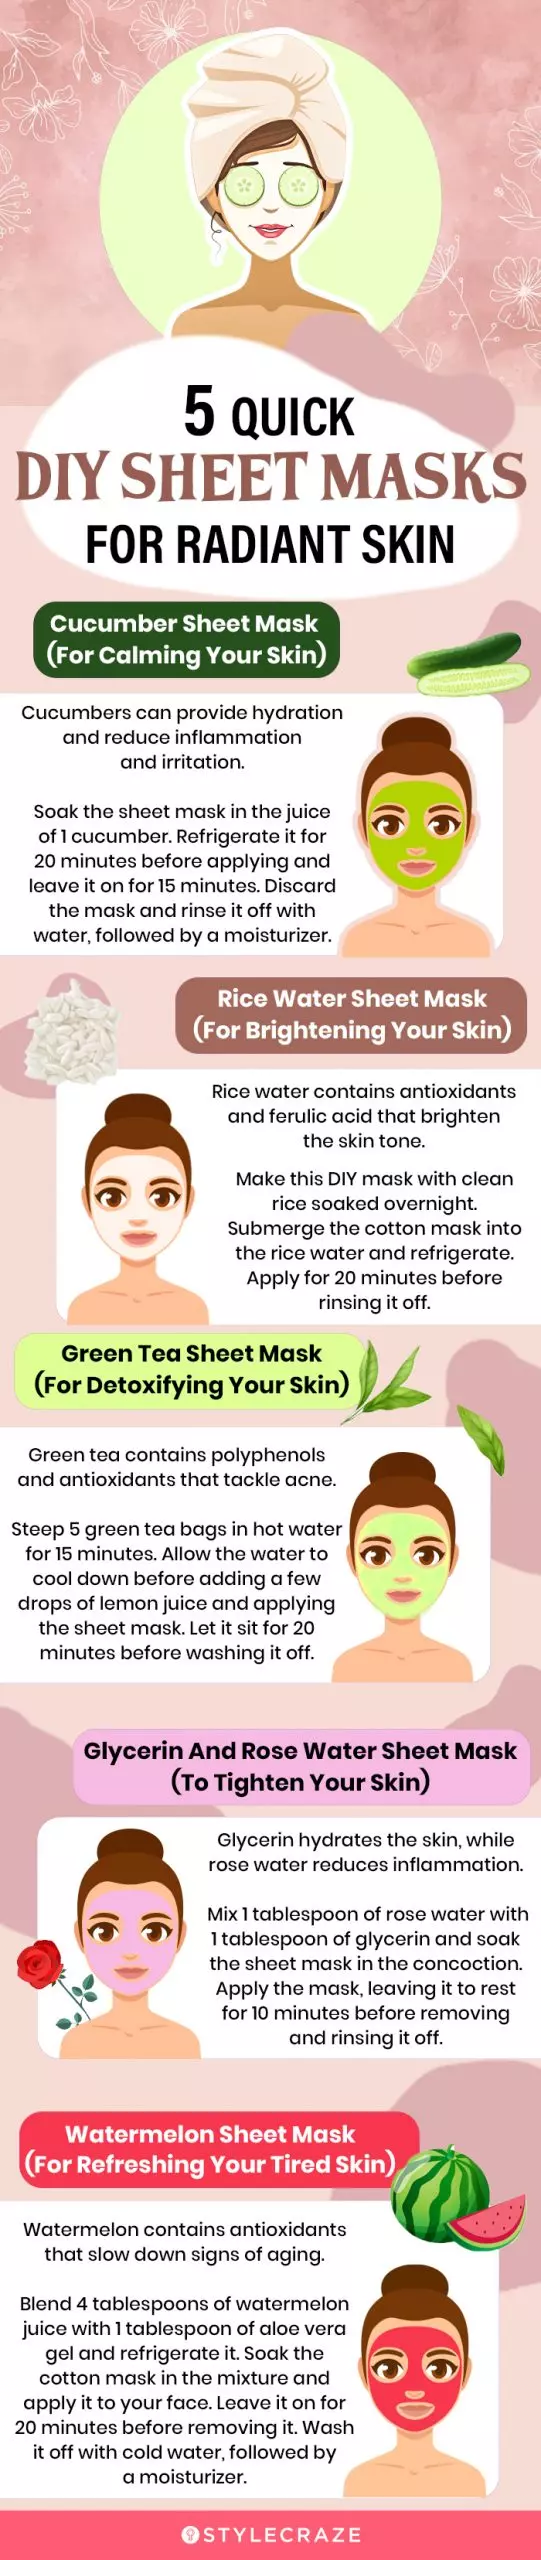 5 quick diy sheet masks for radiant skin (infographic)